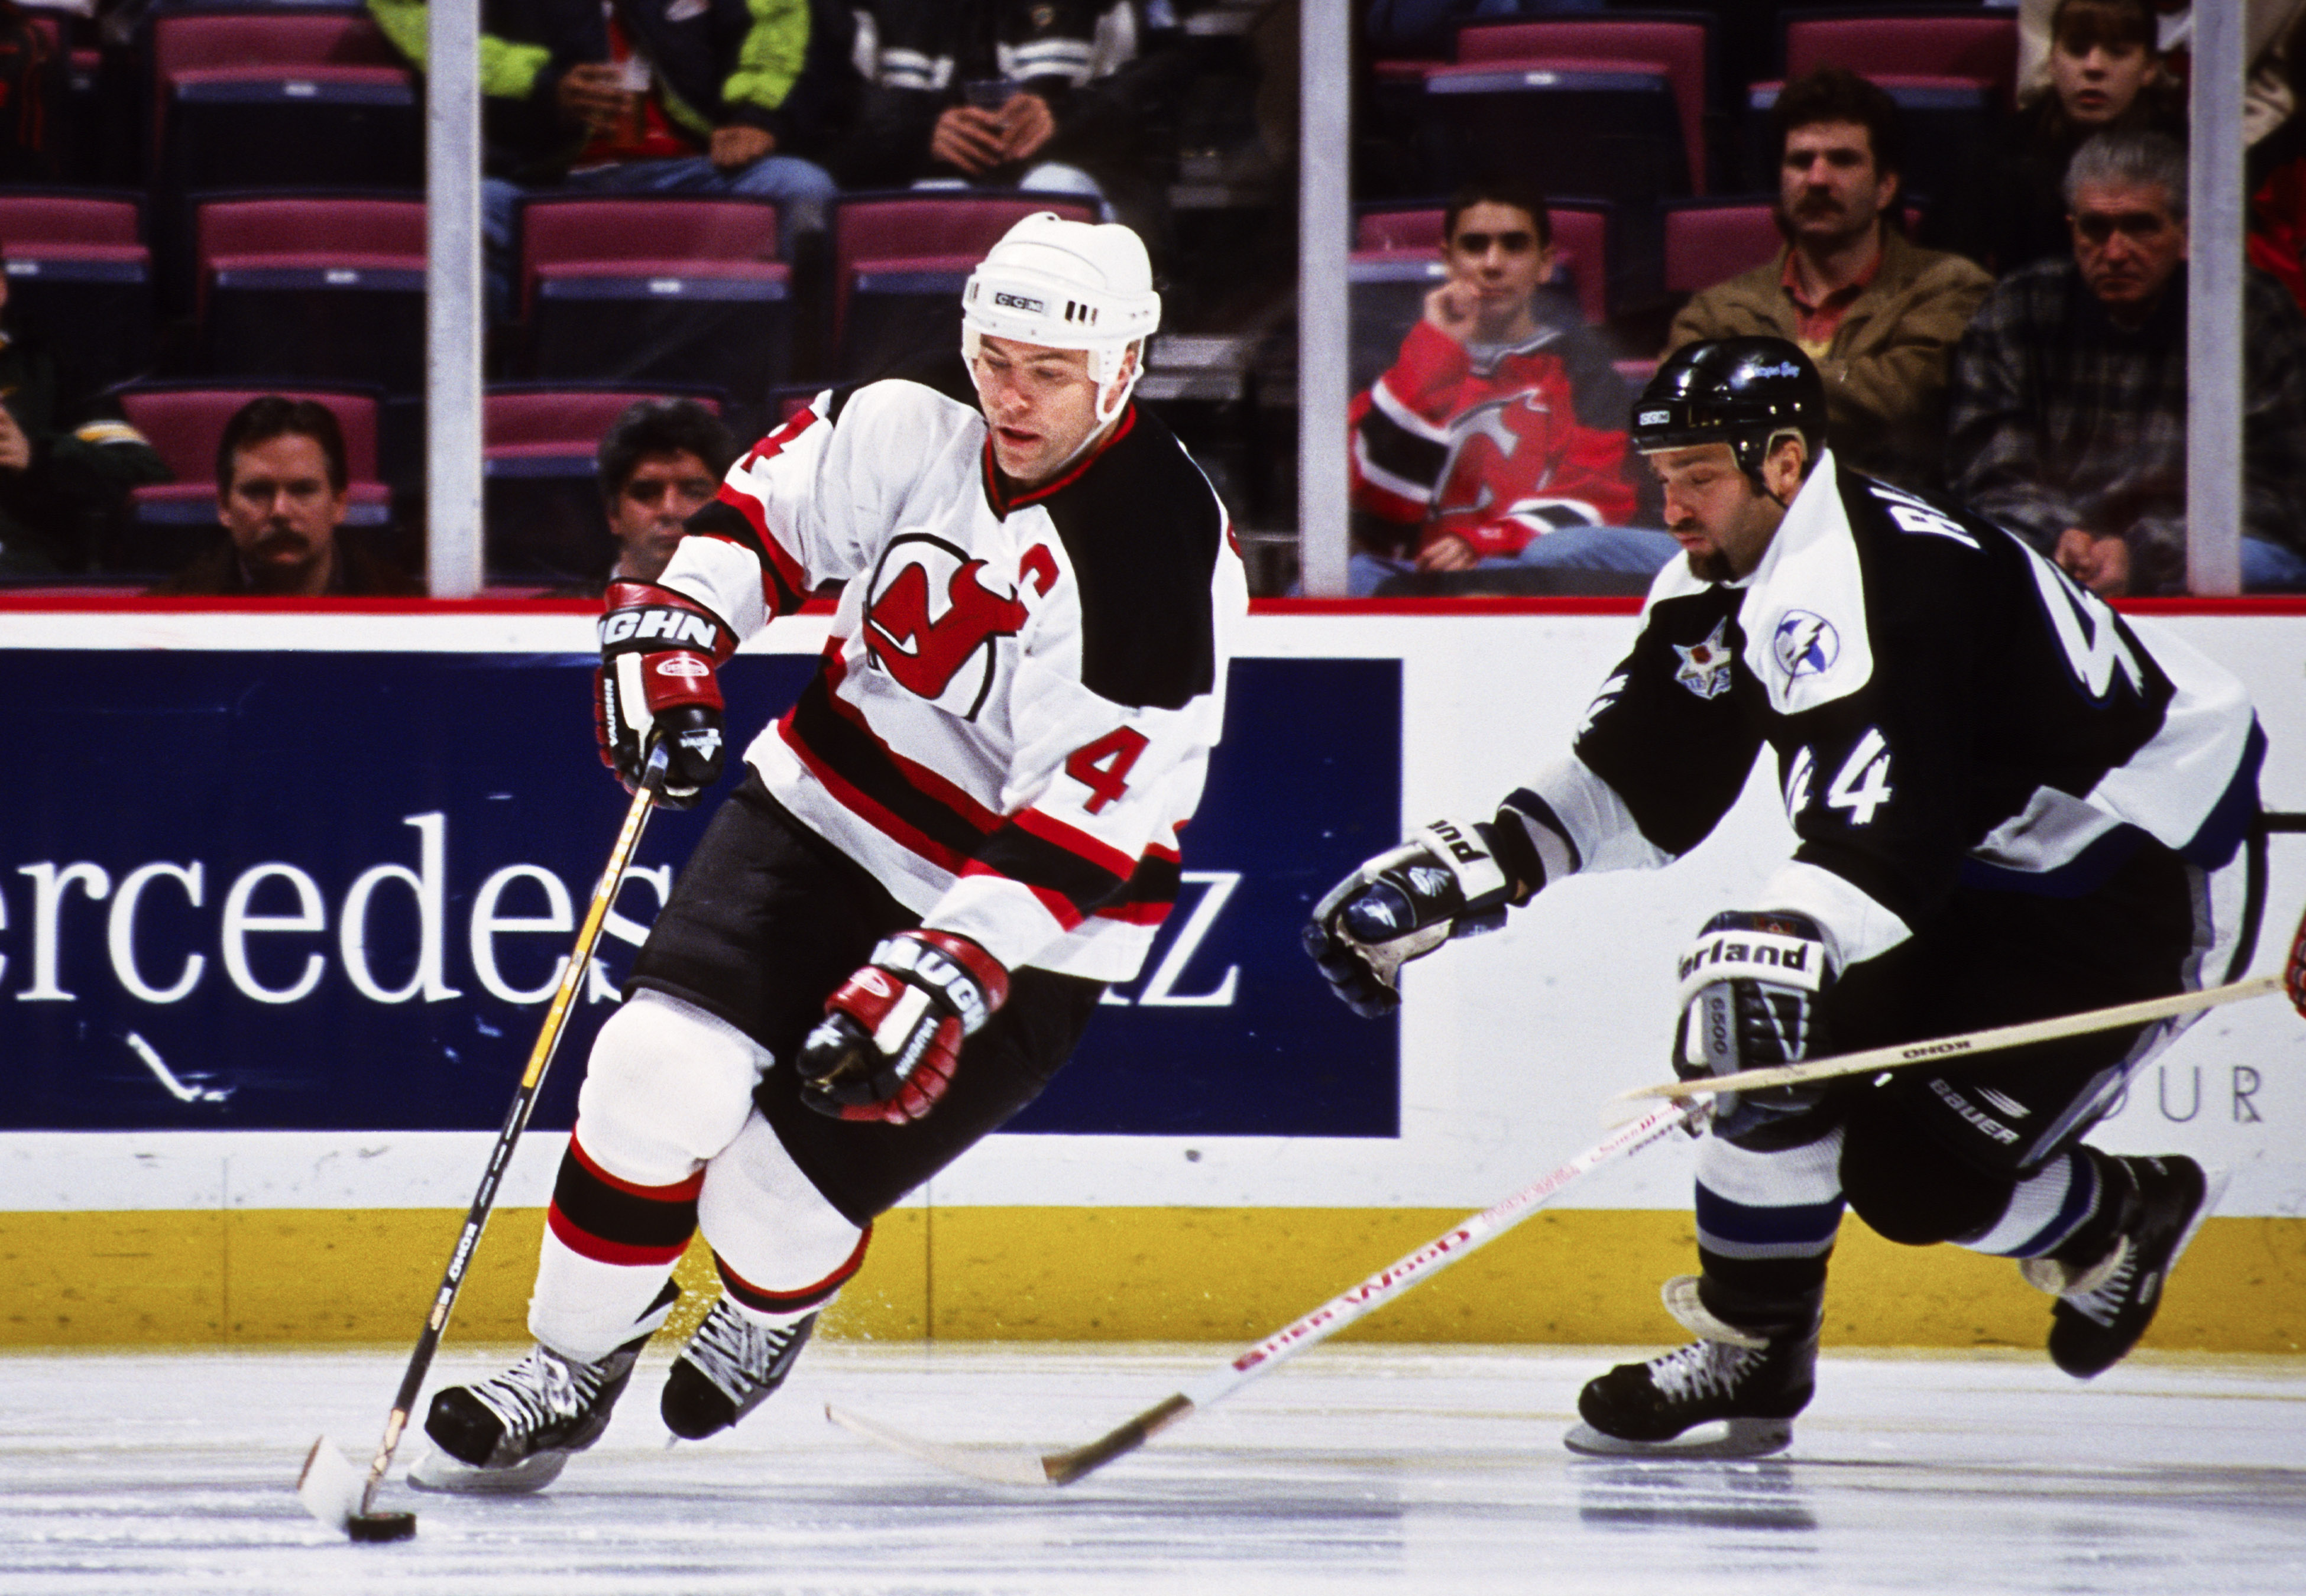 Former New Jersey Devils captain Scott Stevens skates on the ice